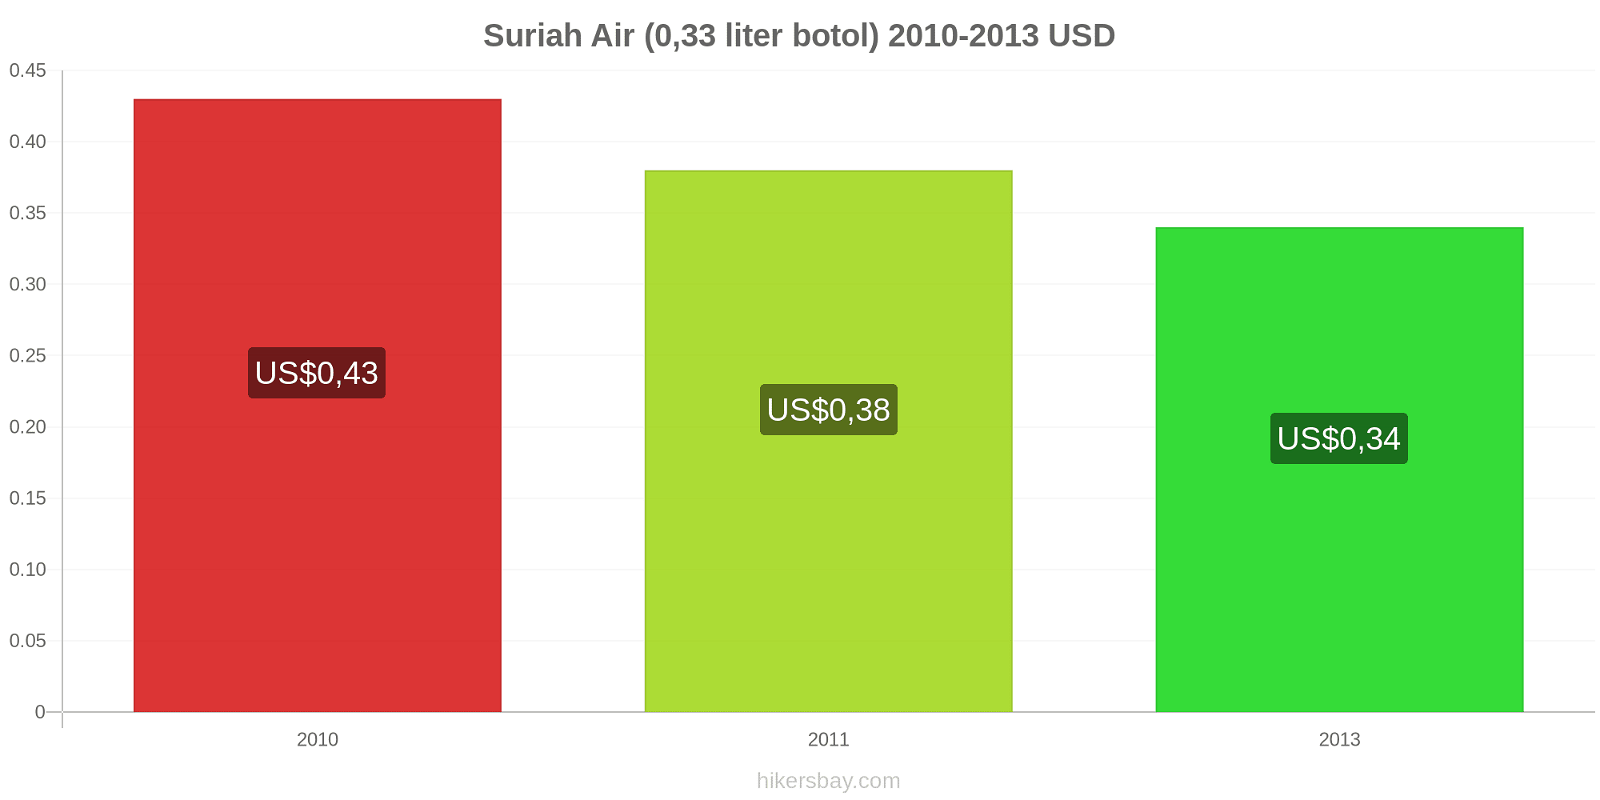 Suriah perubahan harga Air (botol 0.33 liter) hikersbay.com